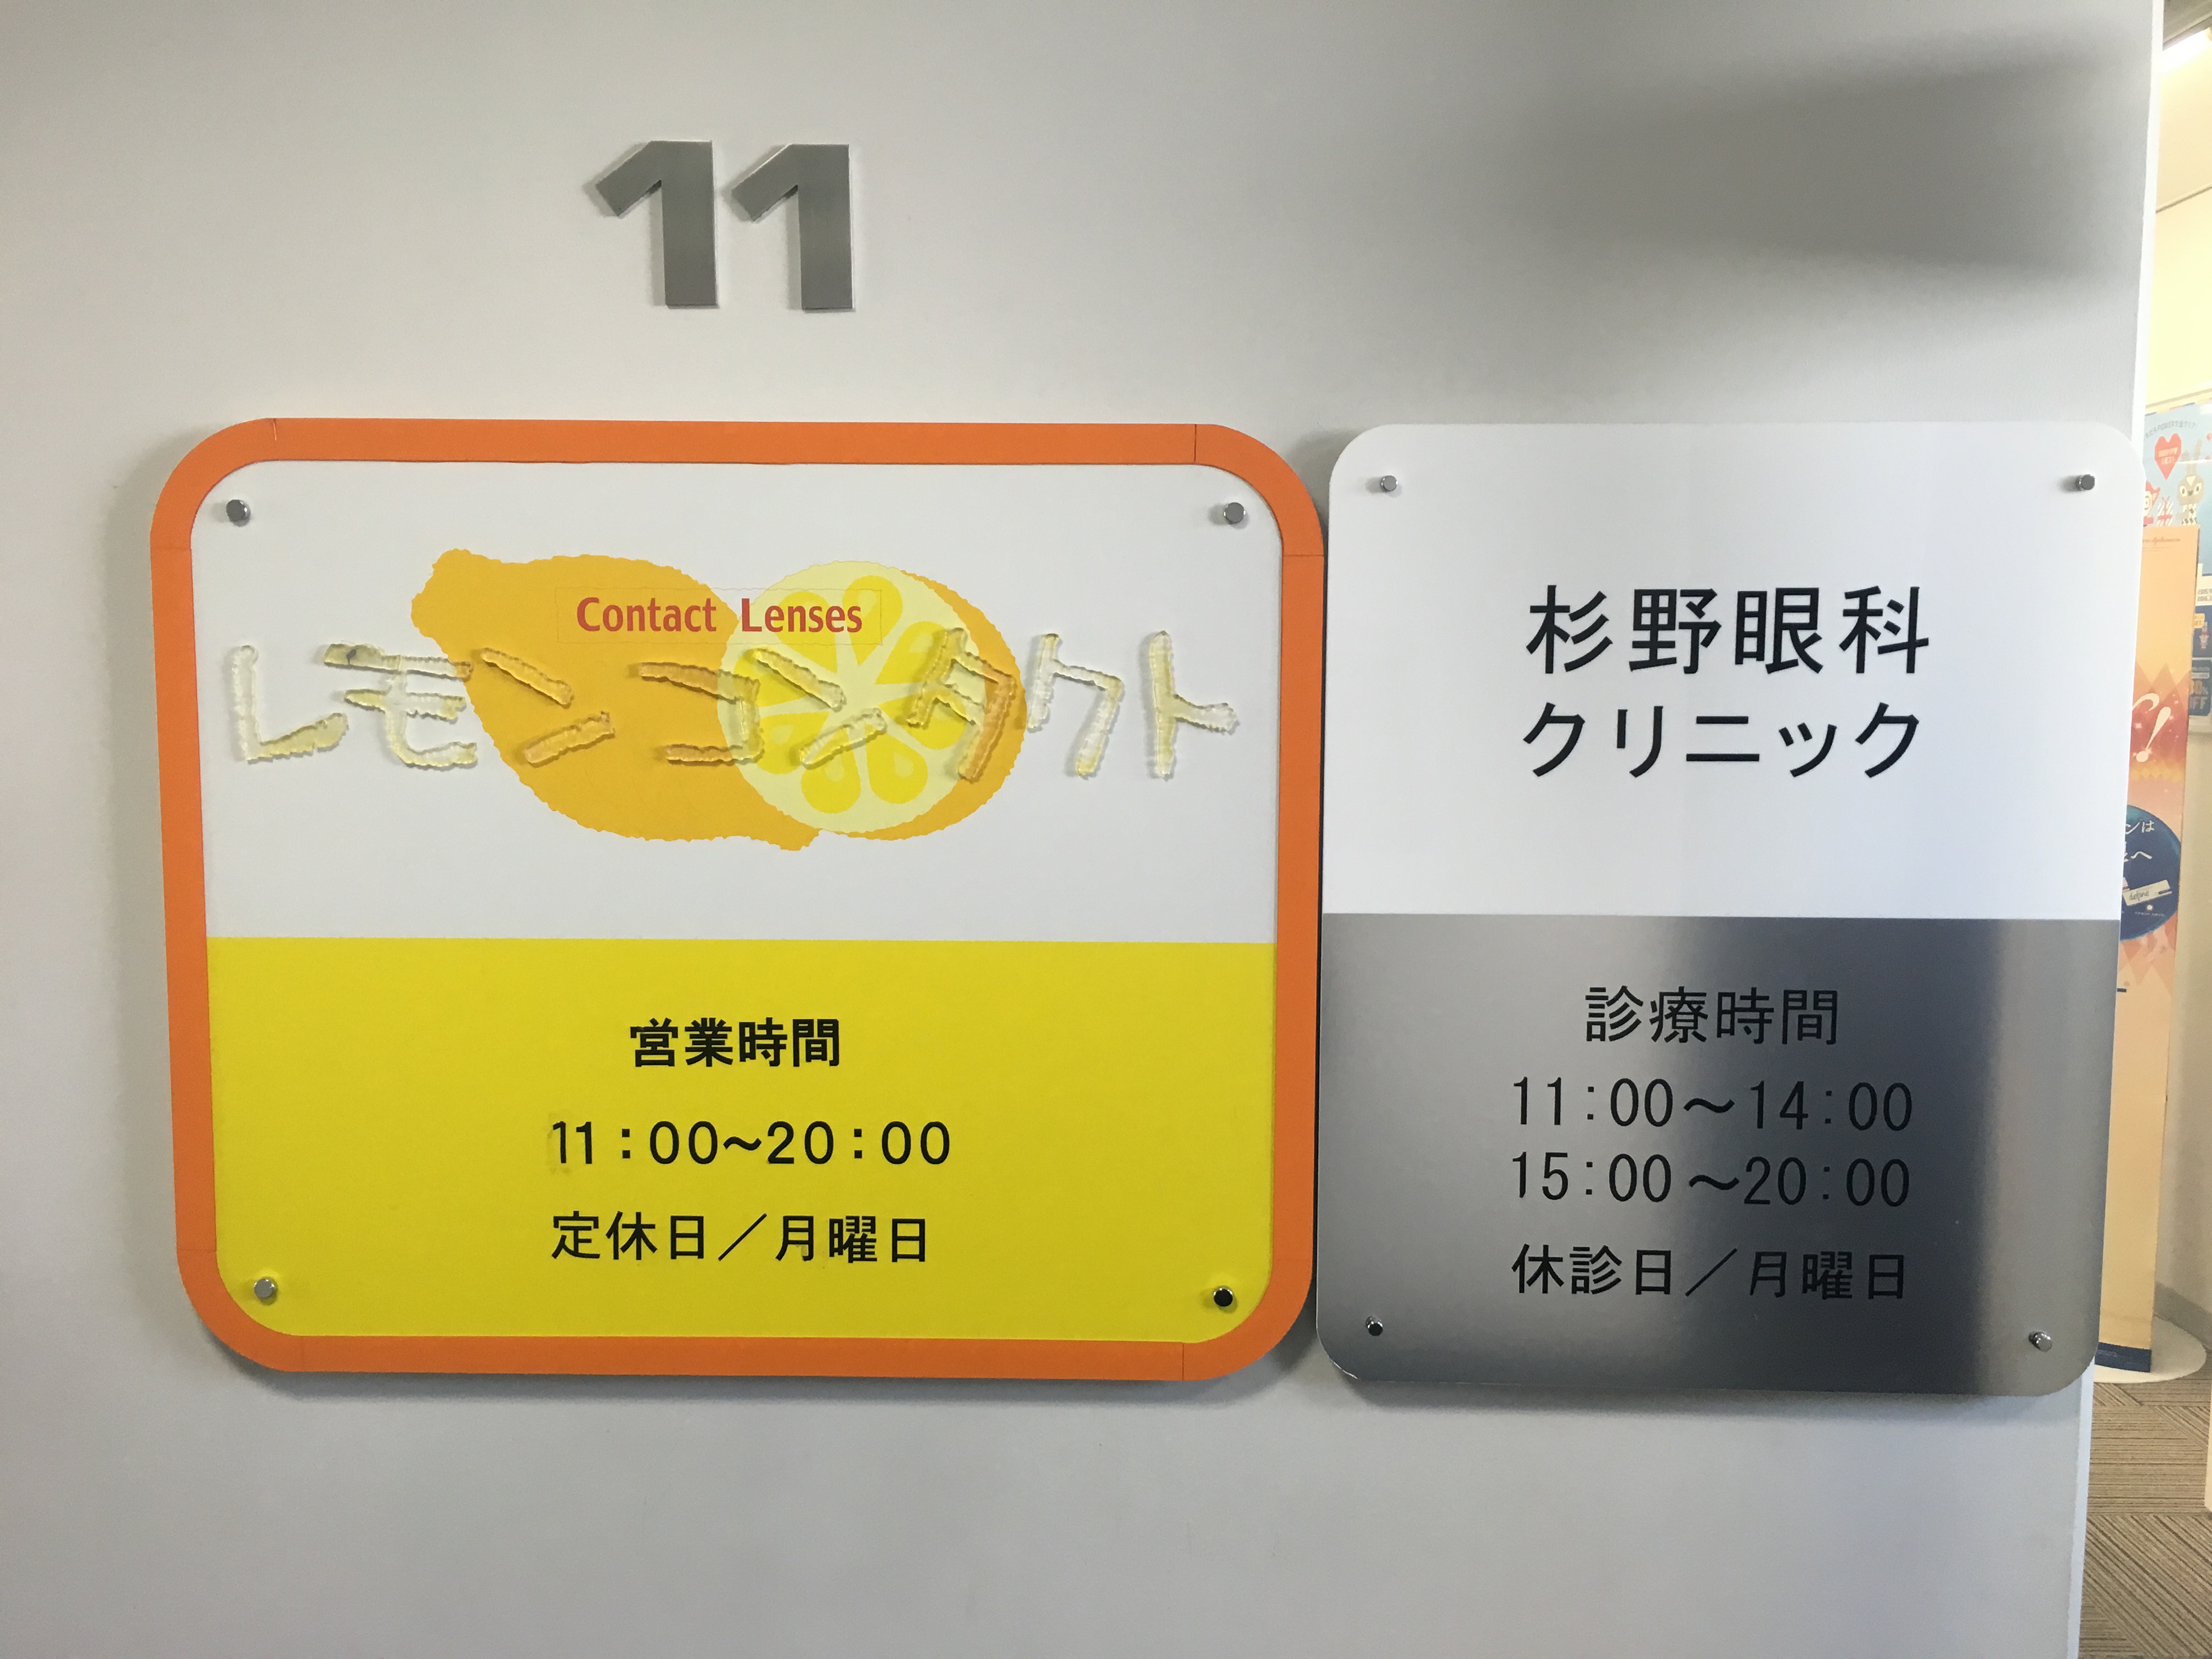 大阪でコンタクトレンズを安く購入できるおすすめ店舗 トシ